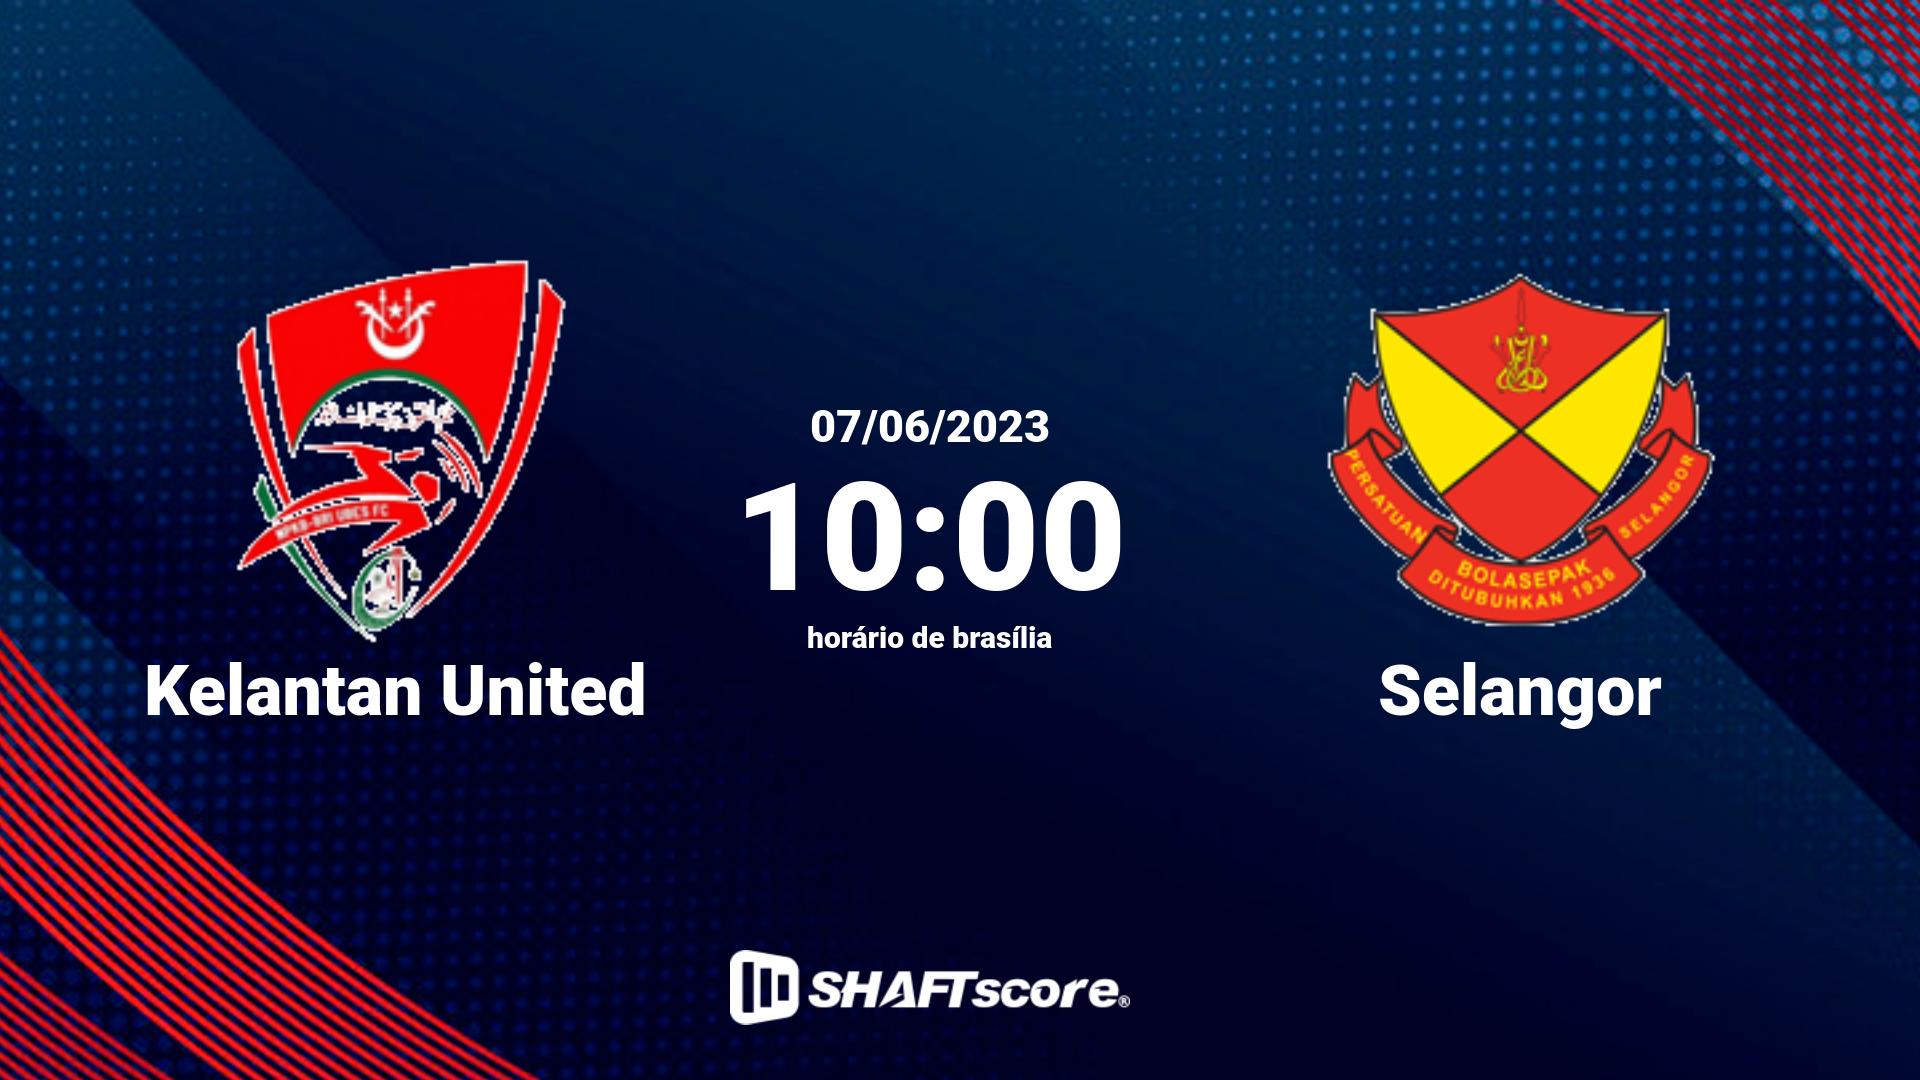 Estatísticas do jogo Kelantan United vs Selangor 07.06 10:00